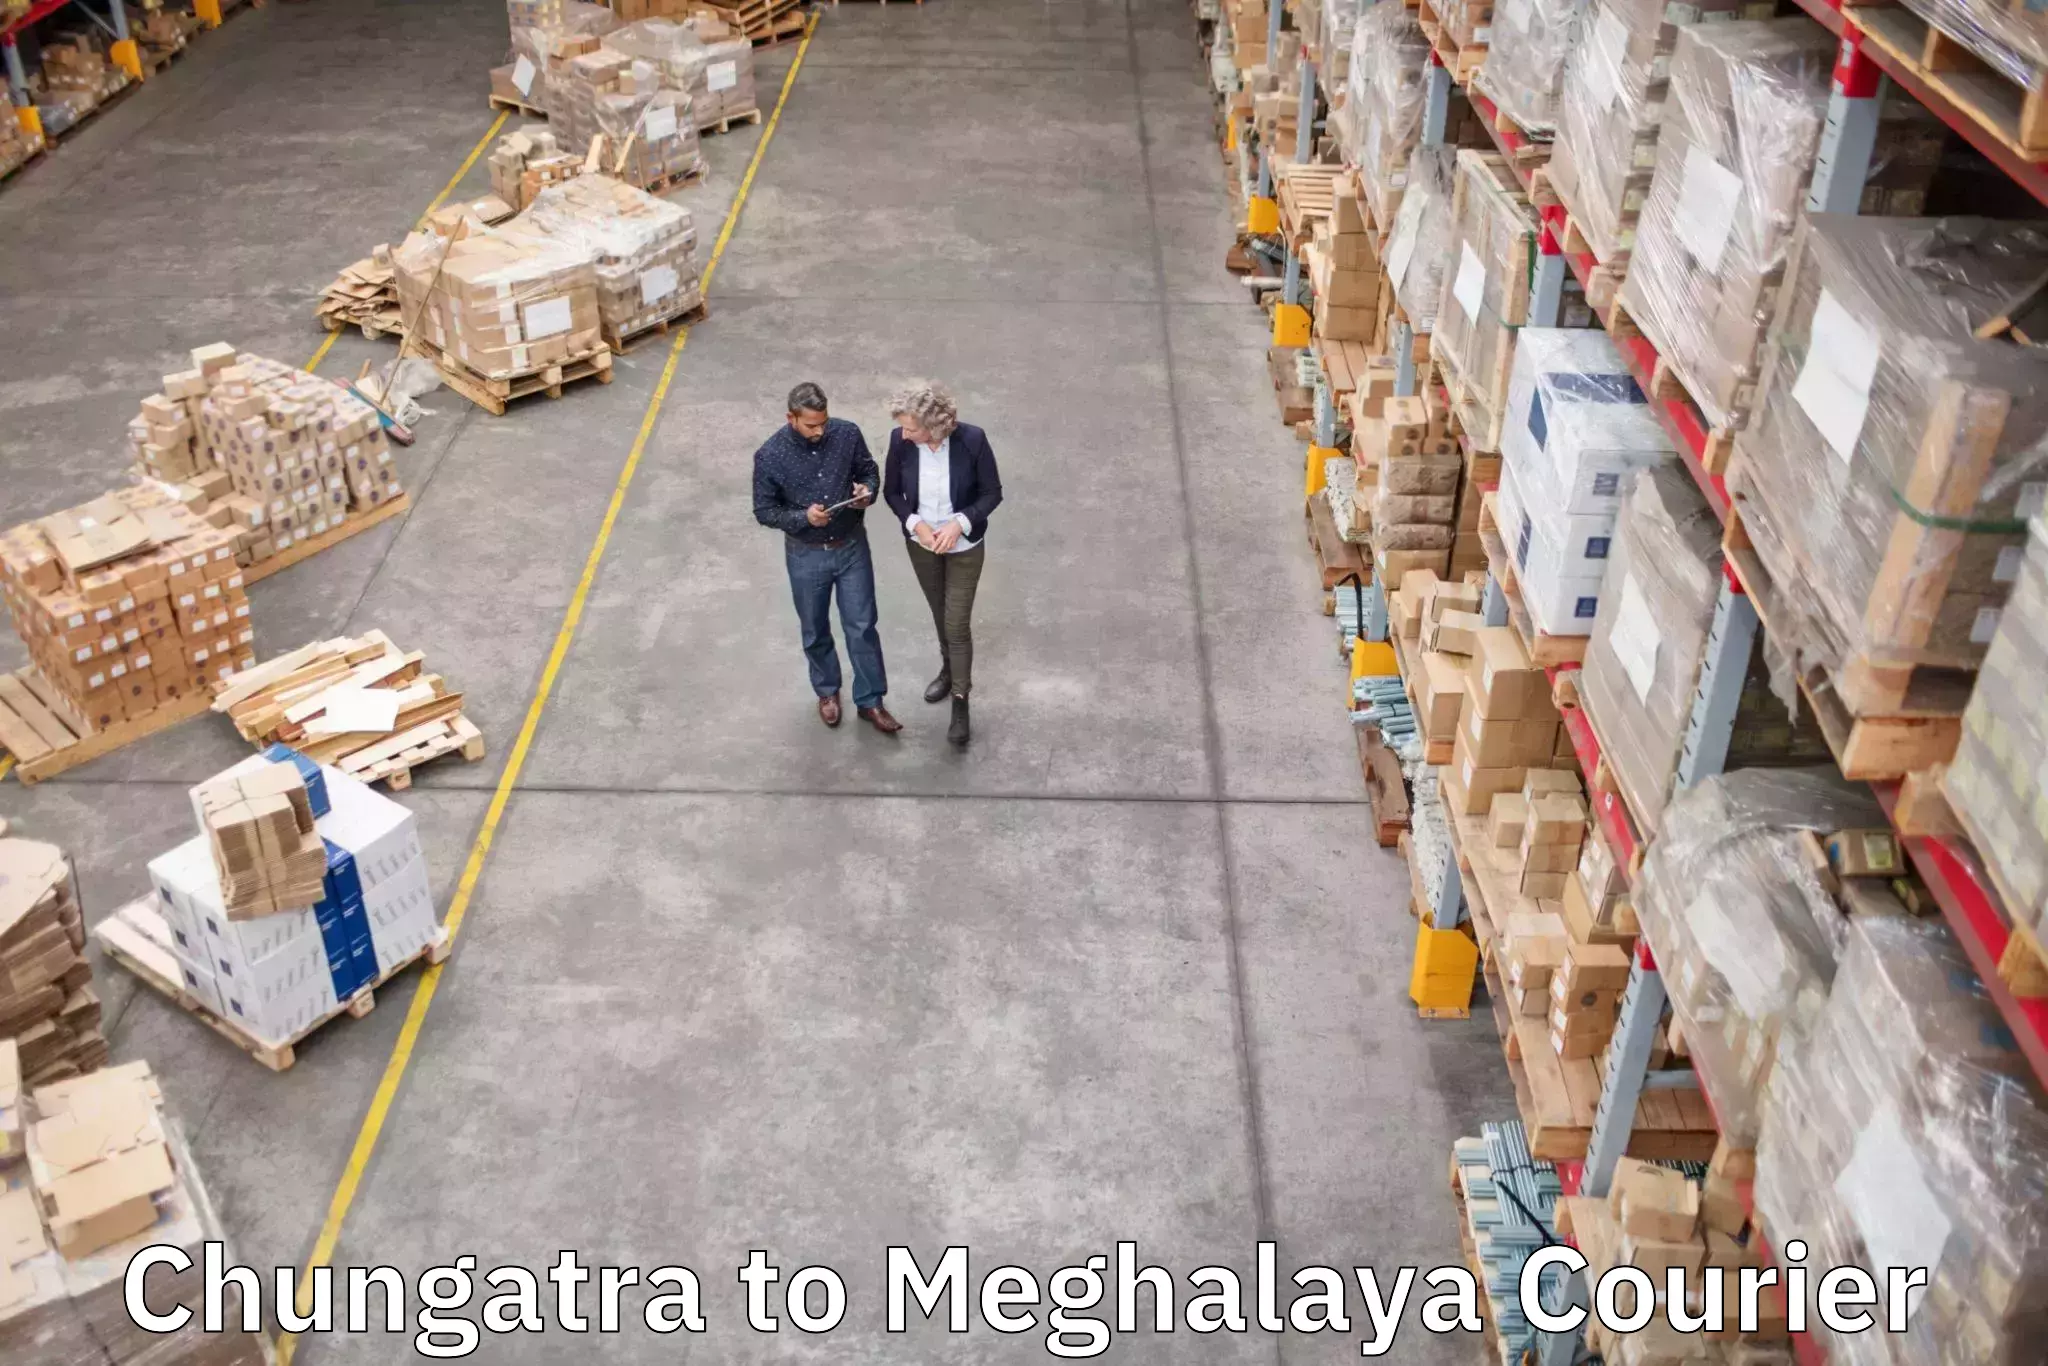 Luggage forwarding service Chungatra to Meghalaya